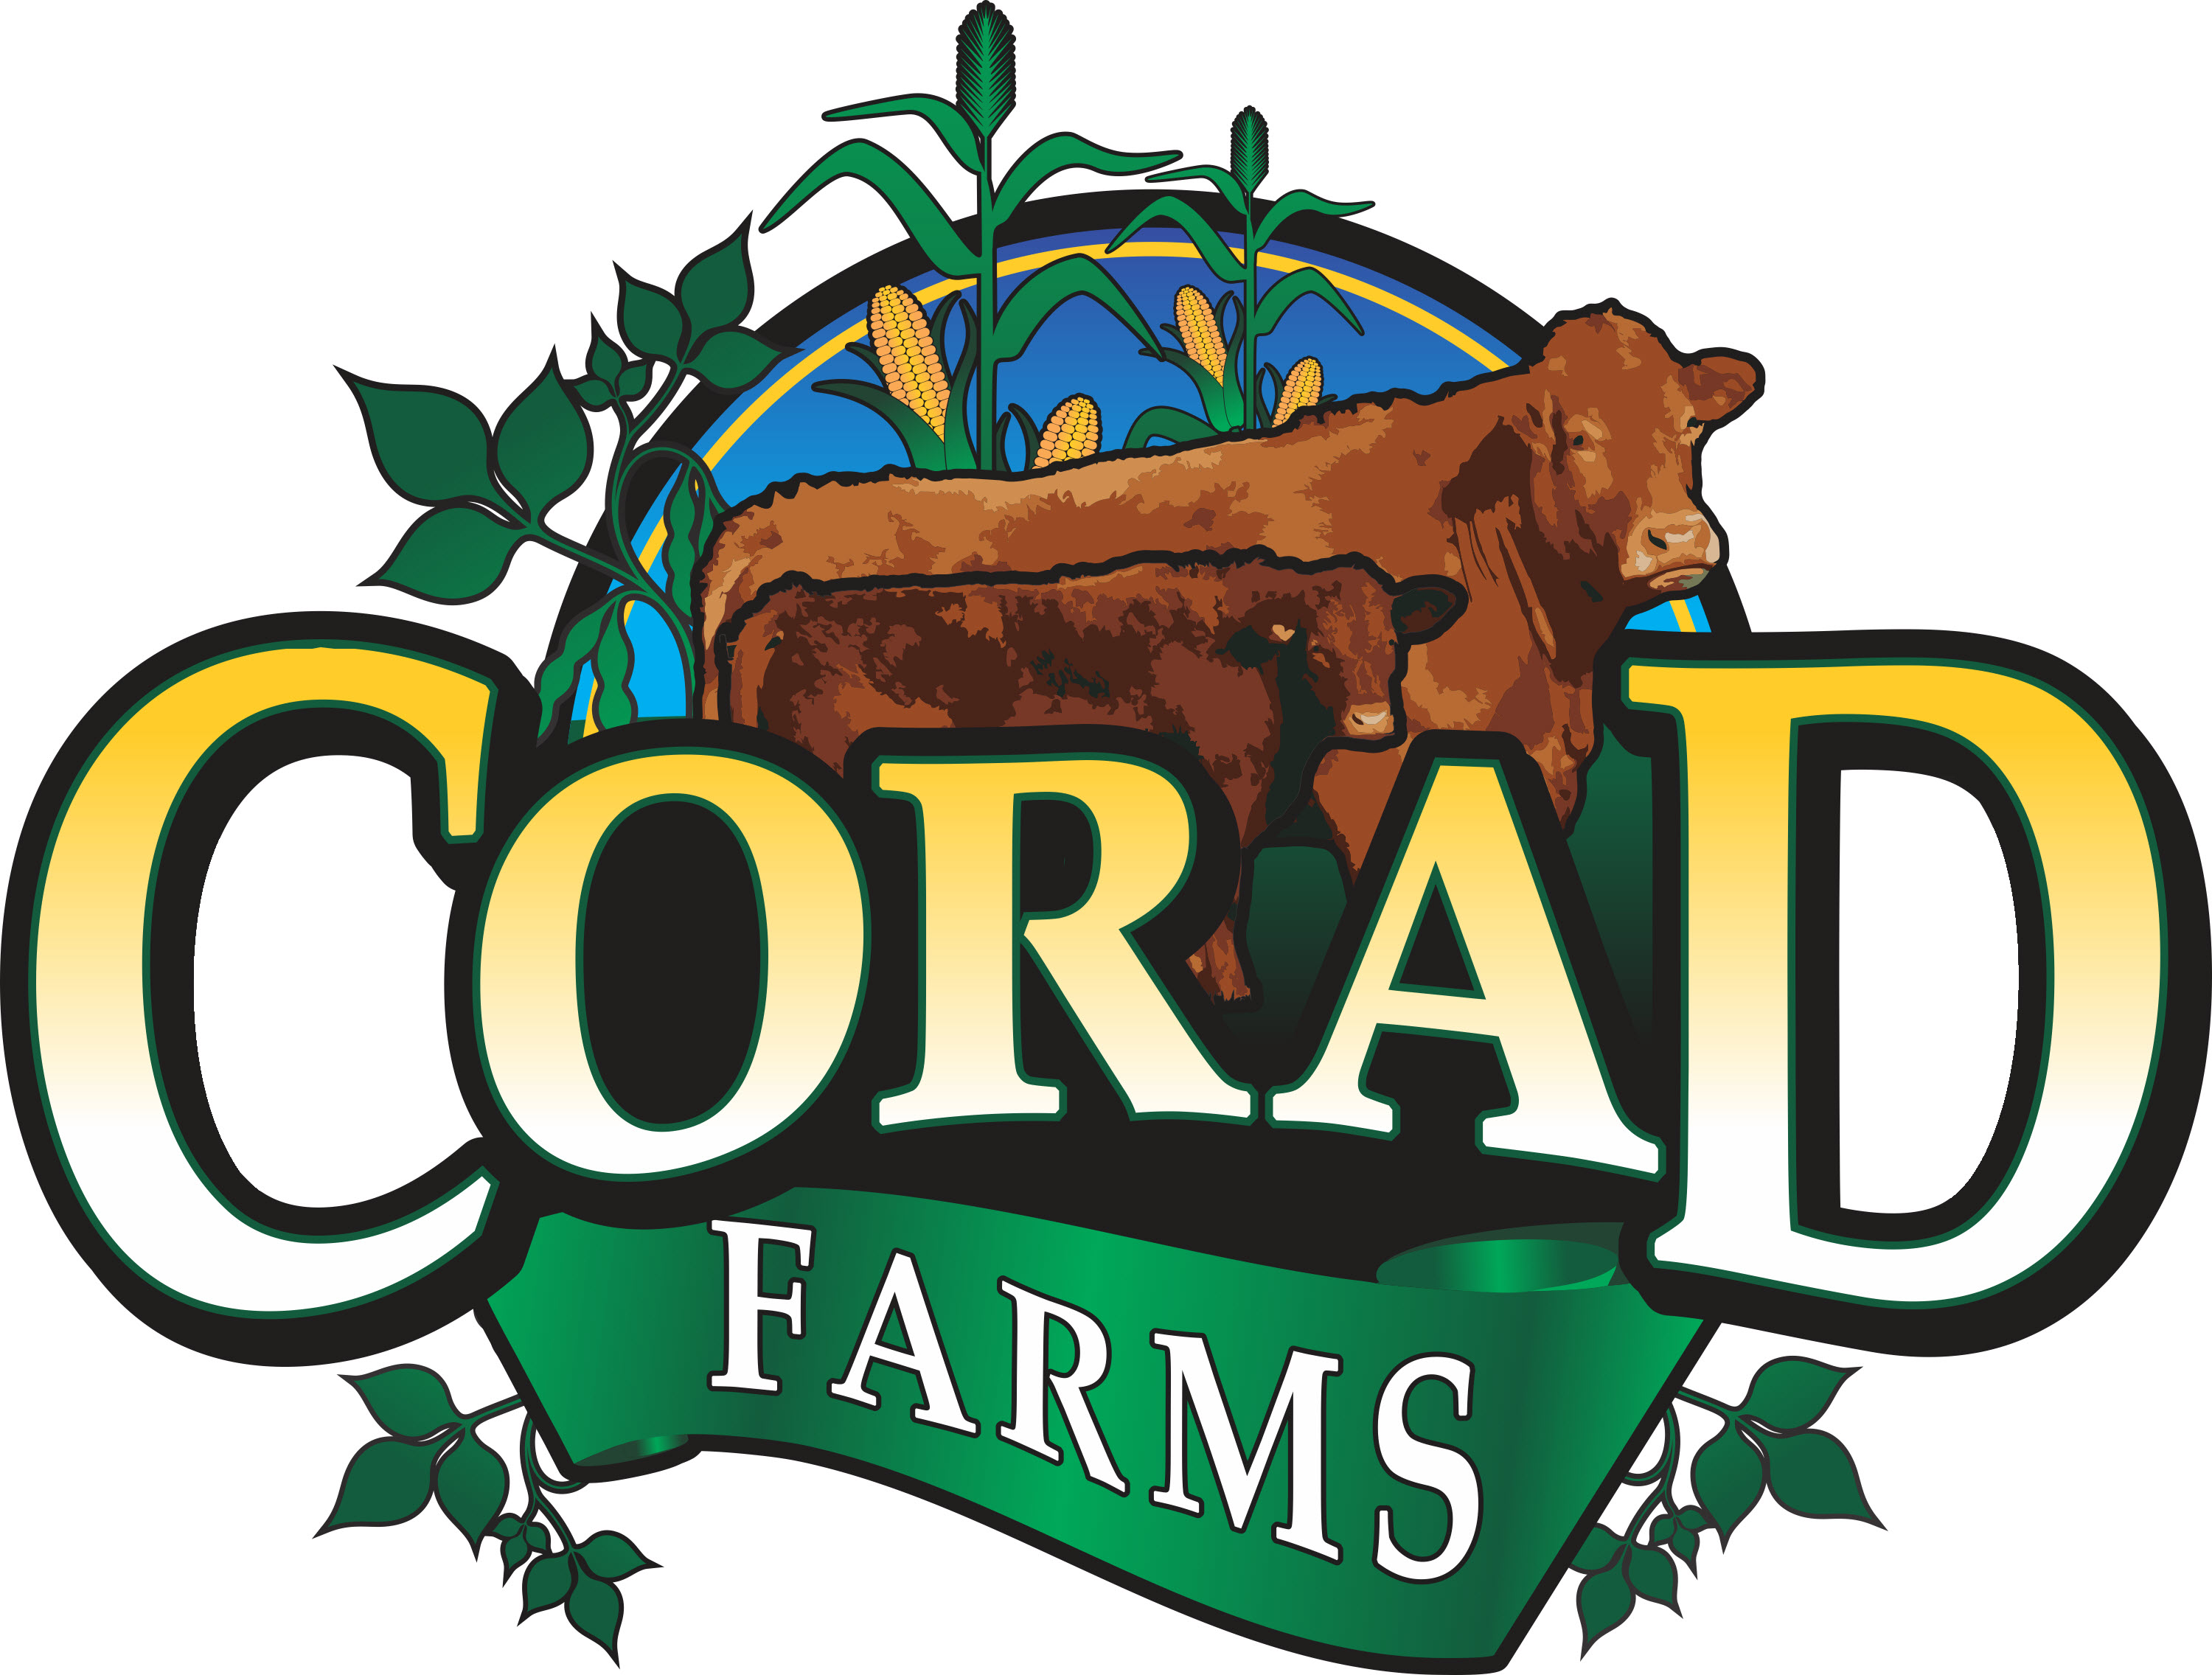 corad farms